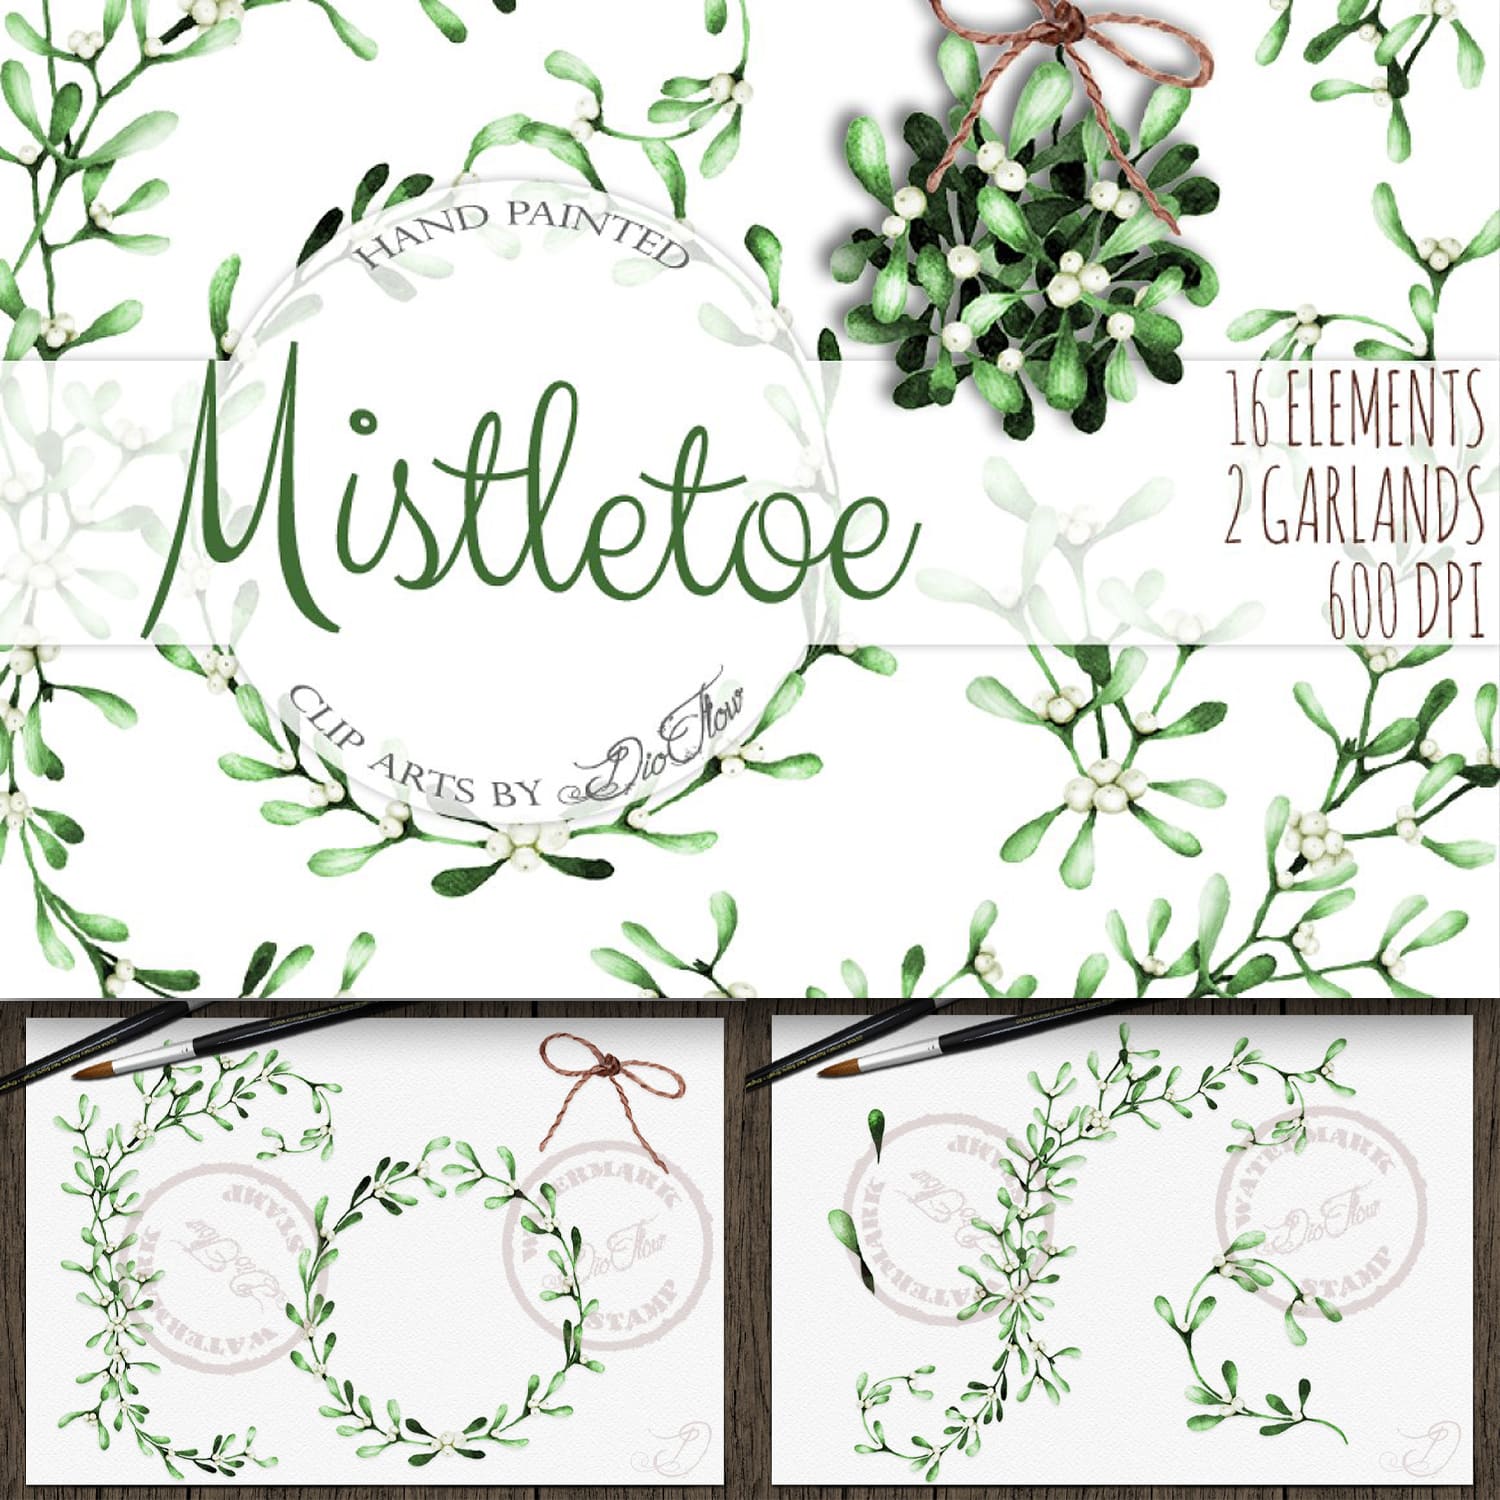 Mistletoe Watercolor Clip Art cover.